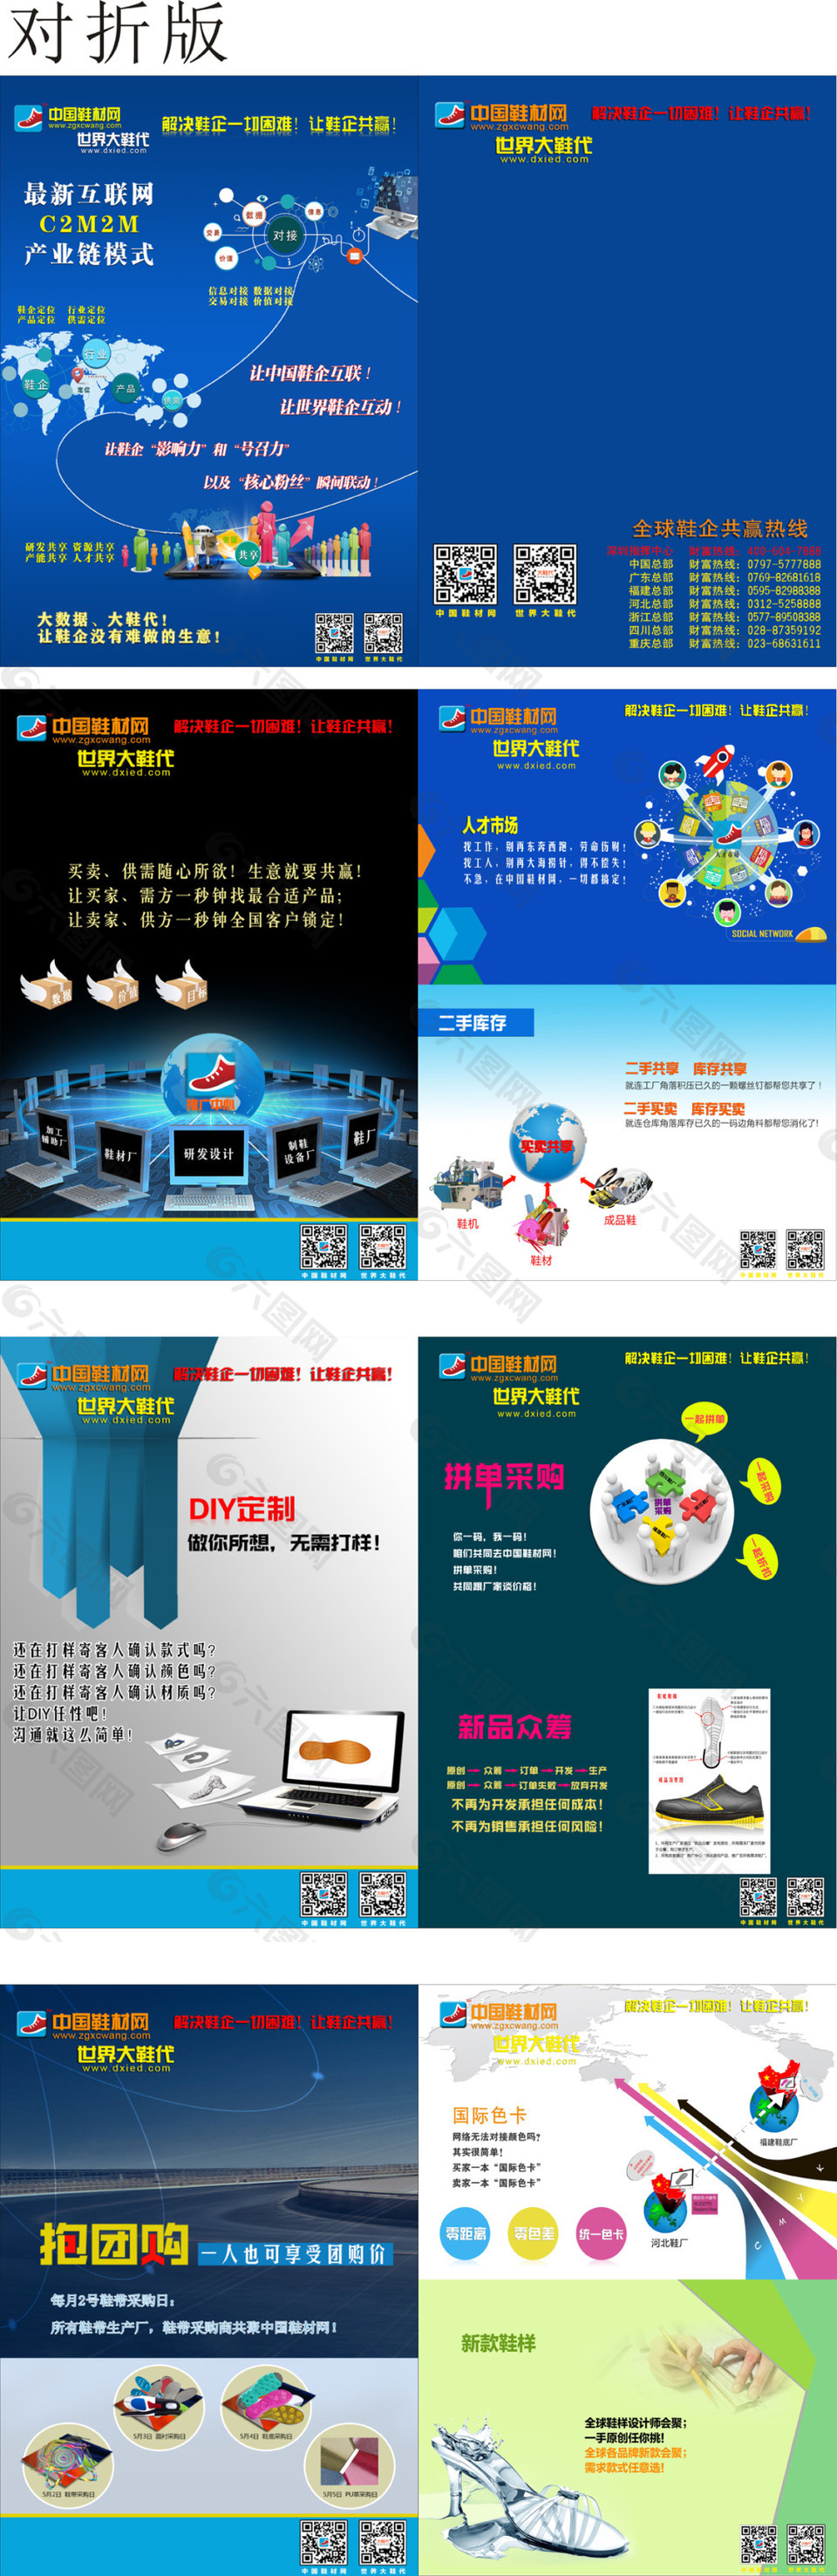 大鞋代--中国鞋材网宣传册